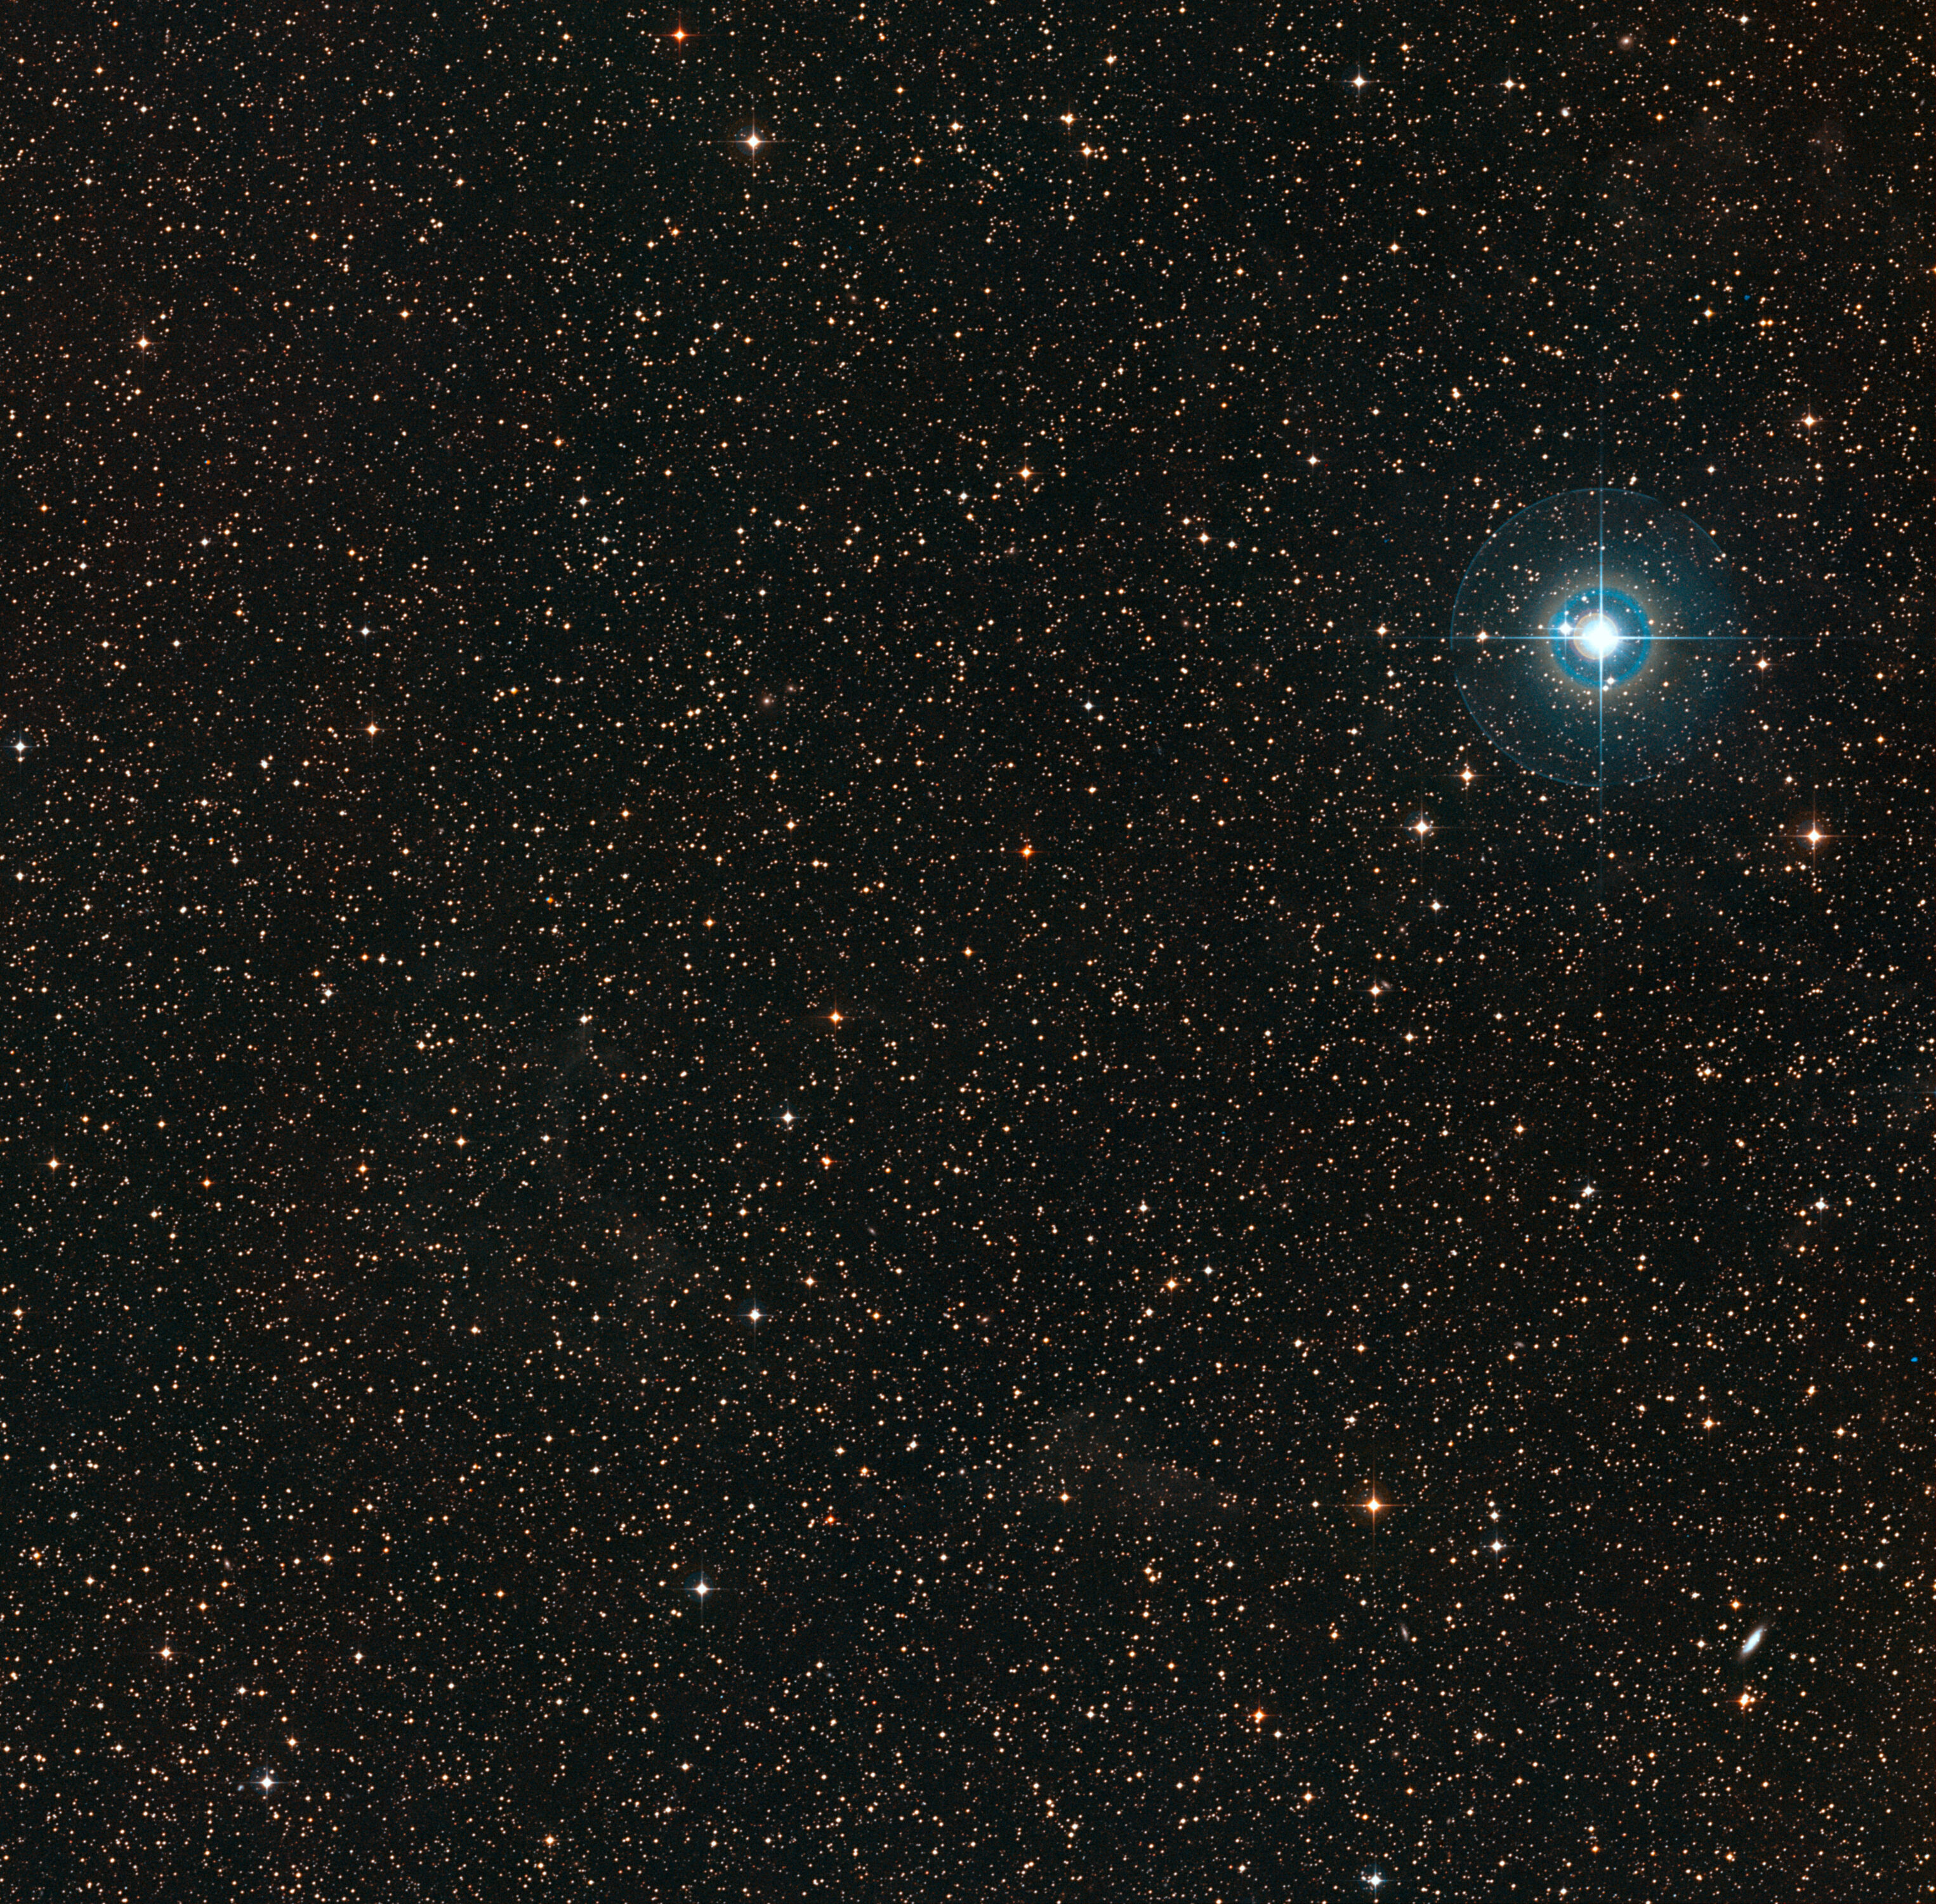 Esta colorida imagen muestra el cielo alrededor de la débil estrella enana naranja PDS 70 (en el centro de la imagen). La estrella azul brillante a la derecha es χ Centauri. Crédito: ESO/Digitized Sky Survey 2. Acknowledgement: Davide De Martin